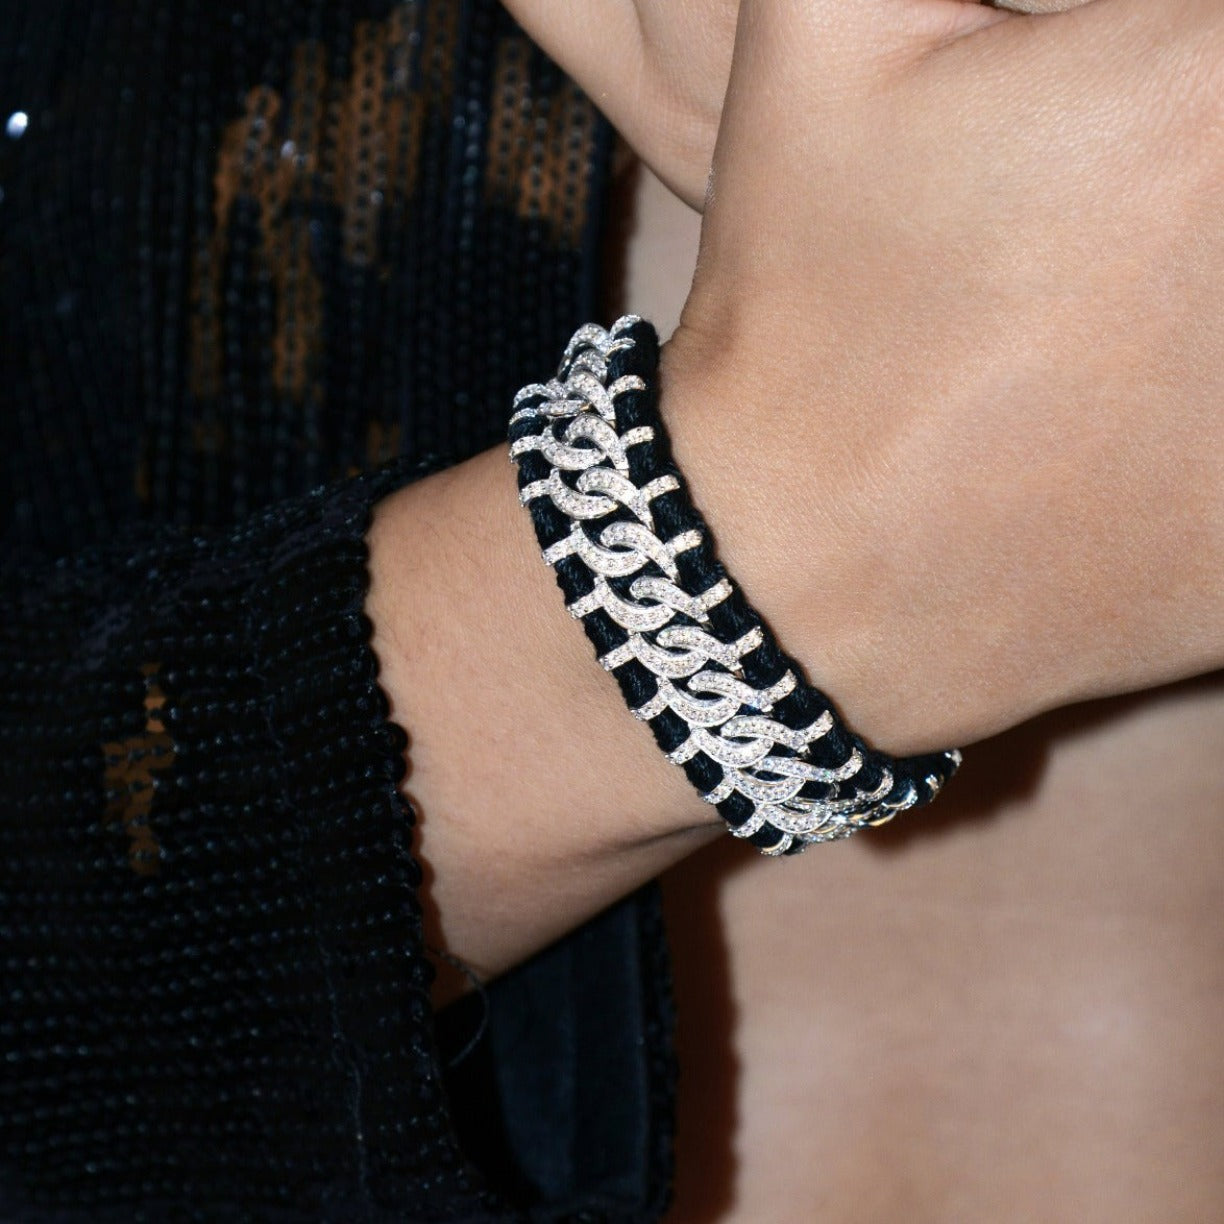 Recife Black bracelet in 925 silver and diamonds